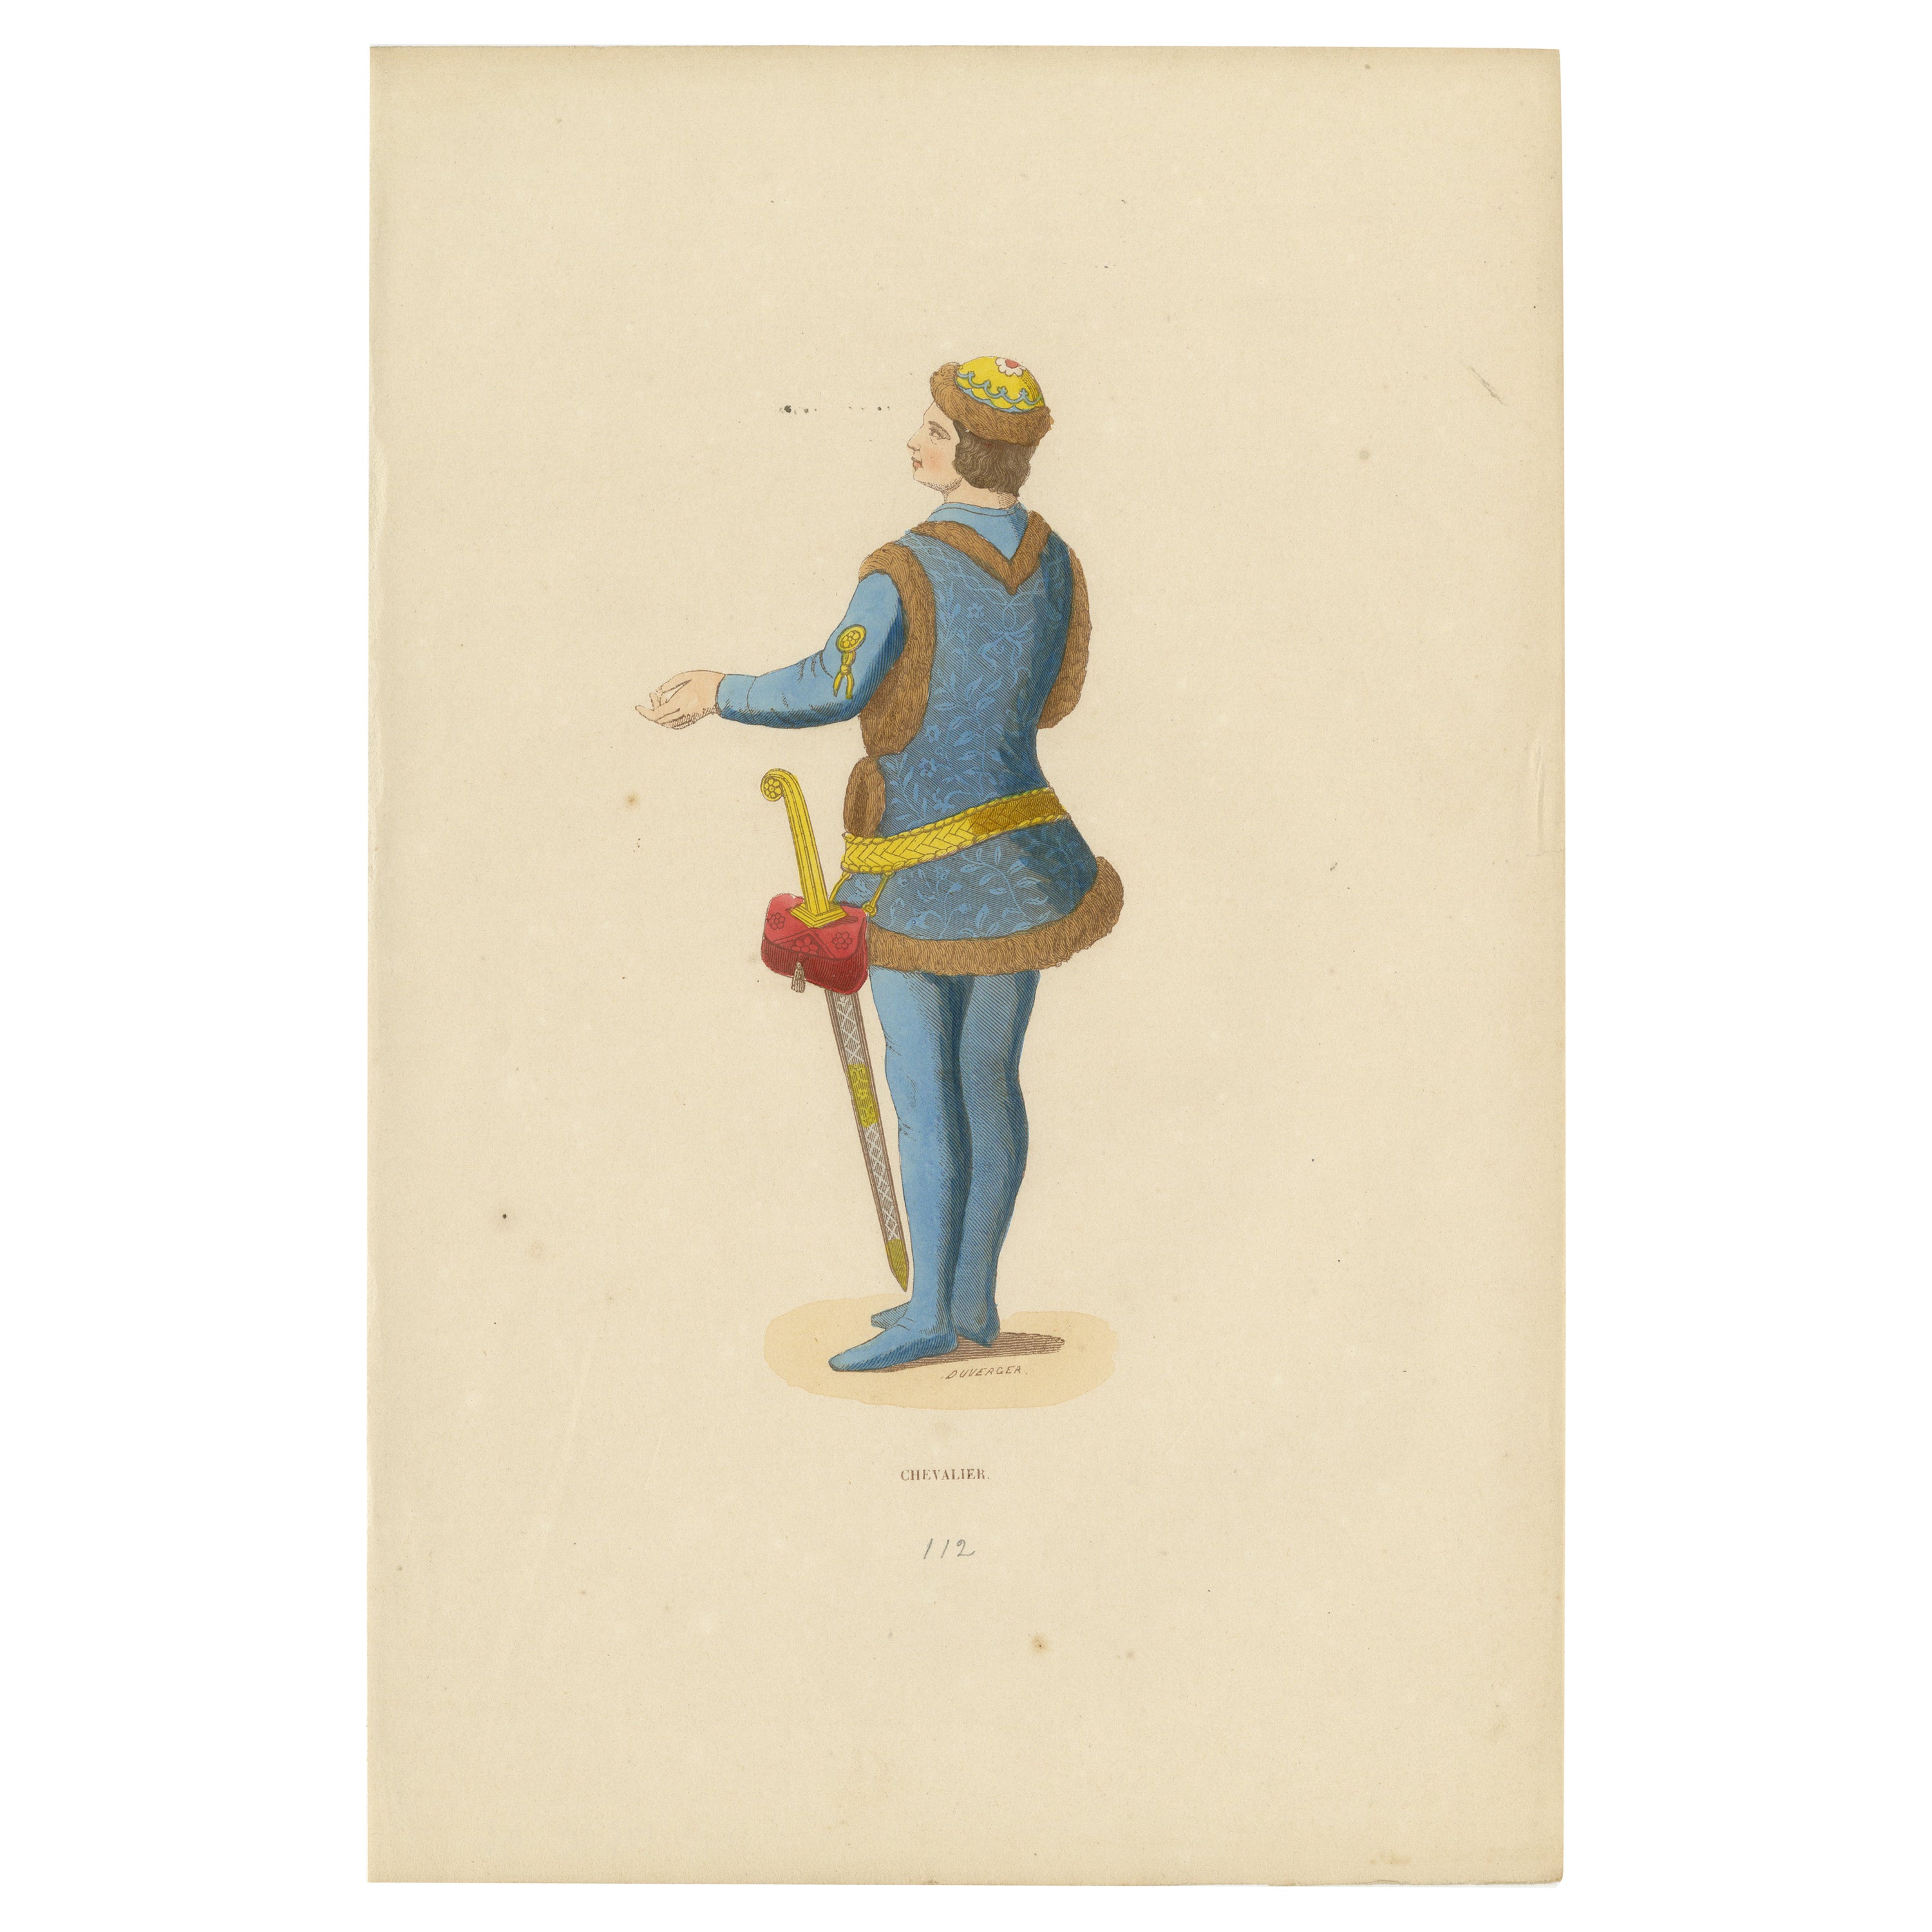 Mittelalterlicher Ritter: Wappen und Tapferkeit im 15. Jahrhundert Garb, 1847